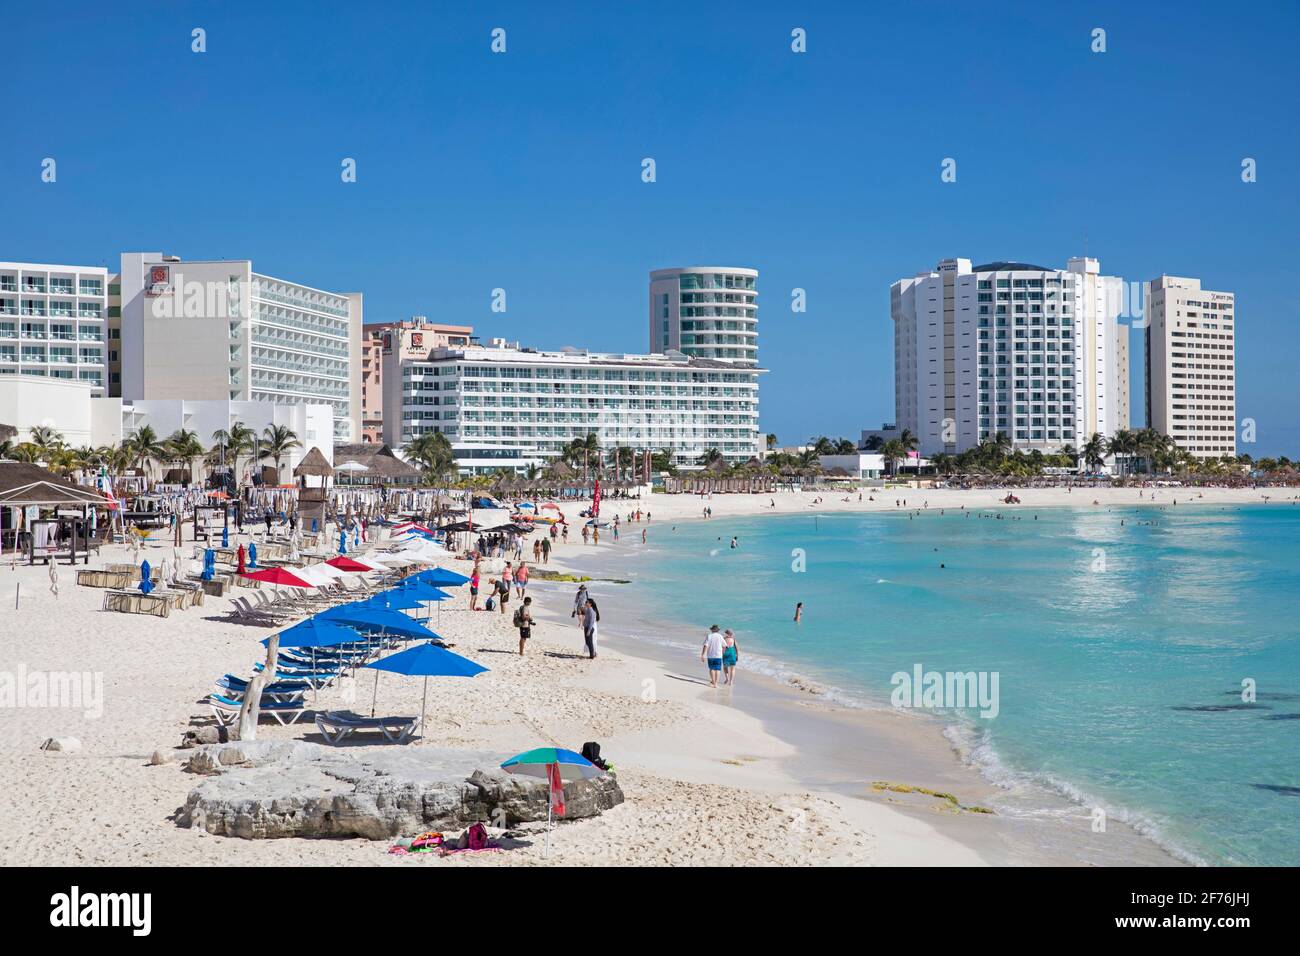 Plage de sable blanc et hôtels de montagne le long de la mer des Caraïbes à la ville de Cancun dans l'état mexicain Quintana Roo, côte nord de la péninsule de Yucatán, Mexique Banque D'Images